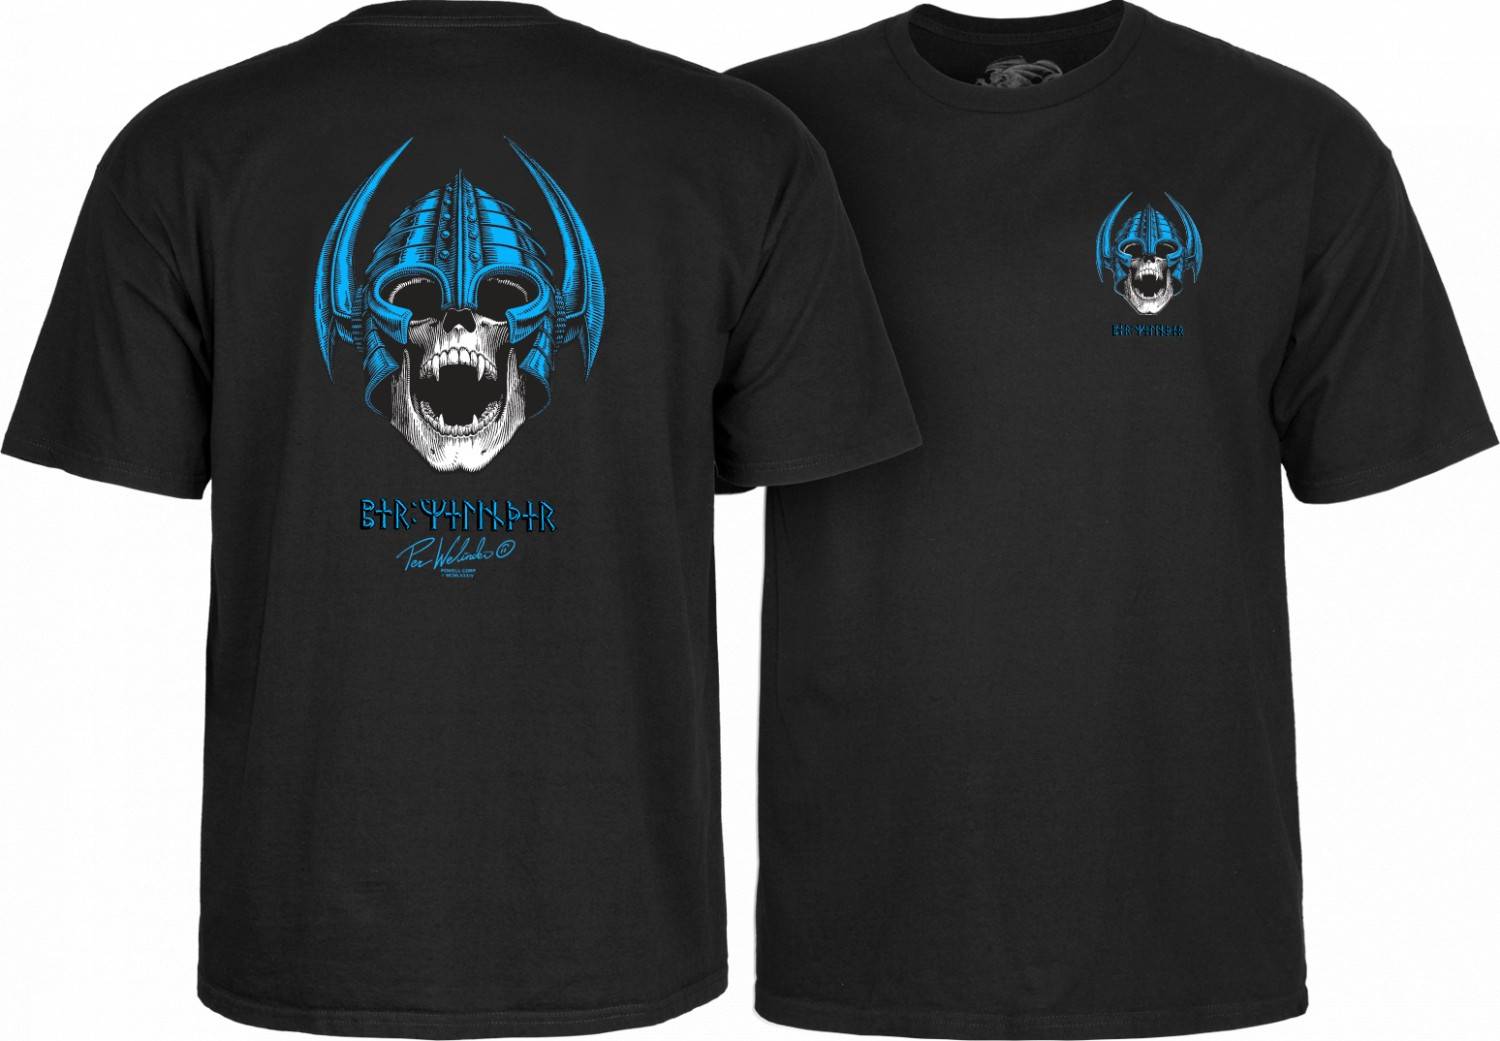 Powell Peralta Welinder Nordic Skull T-shirt Black - SkateTillDeath.com